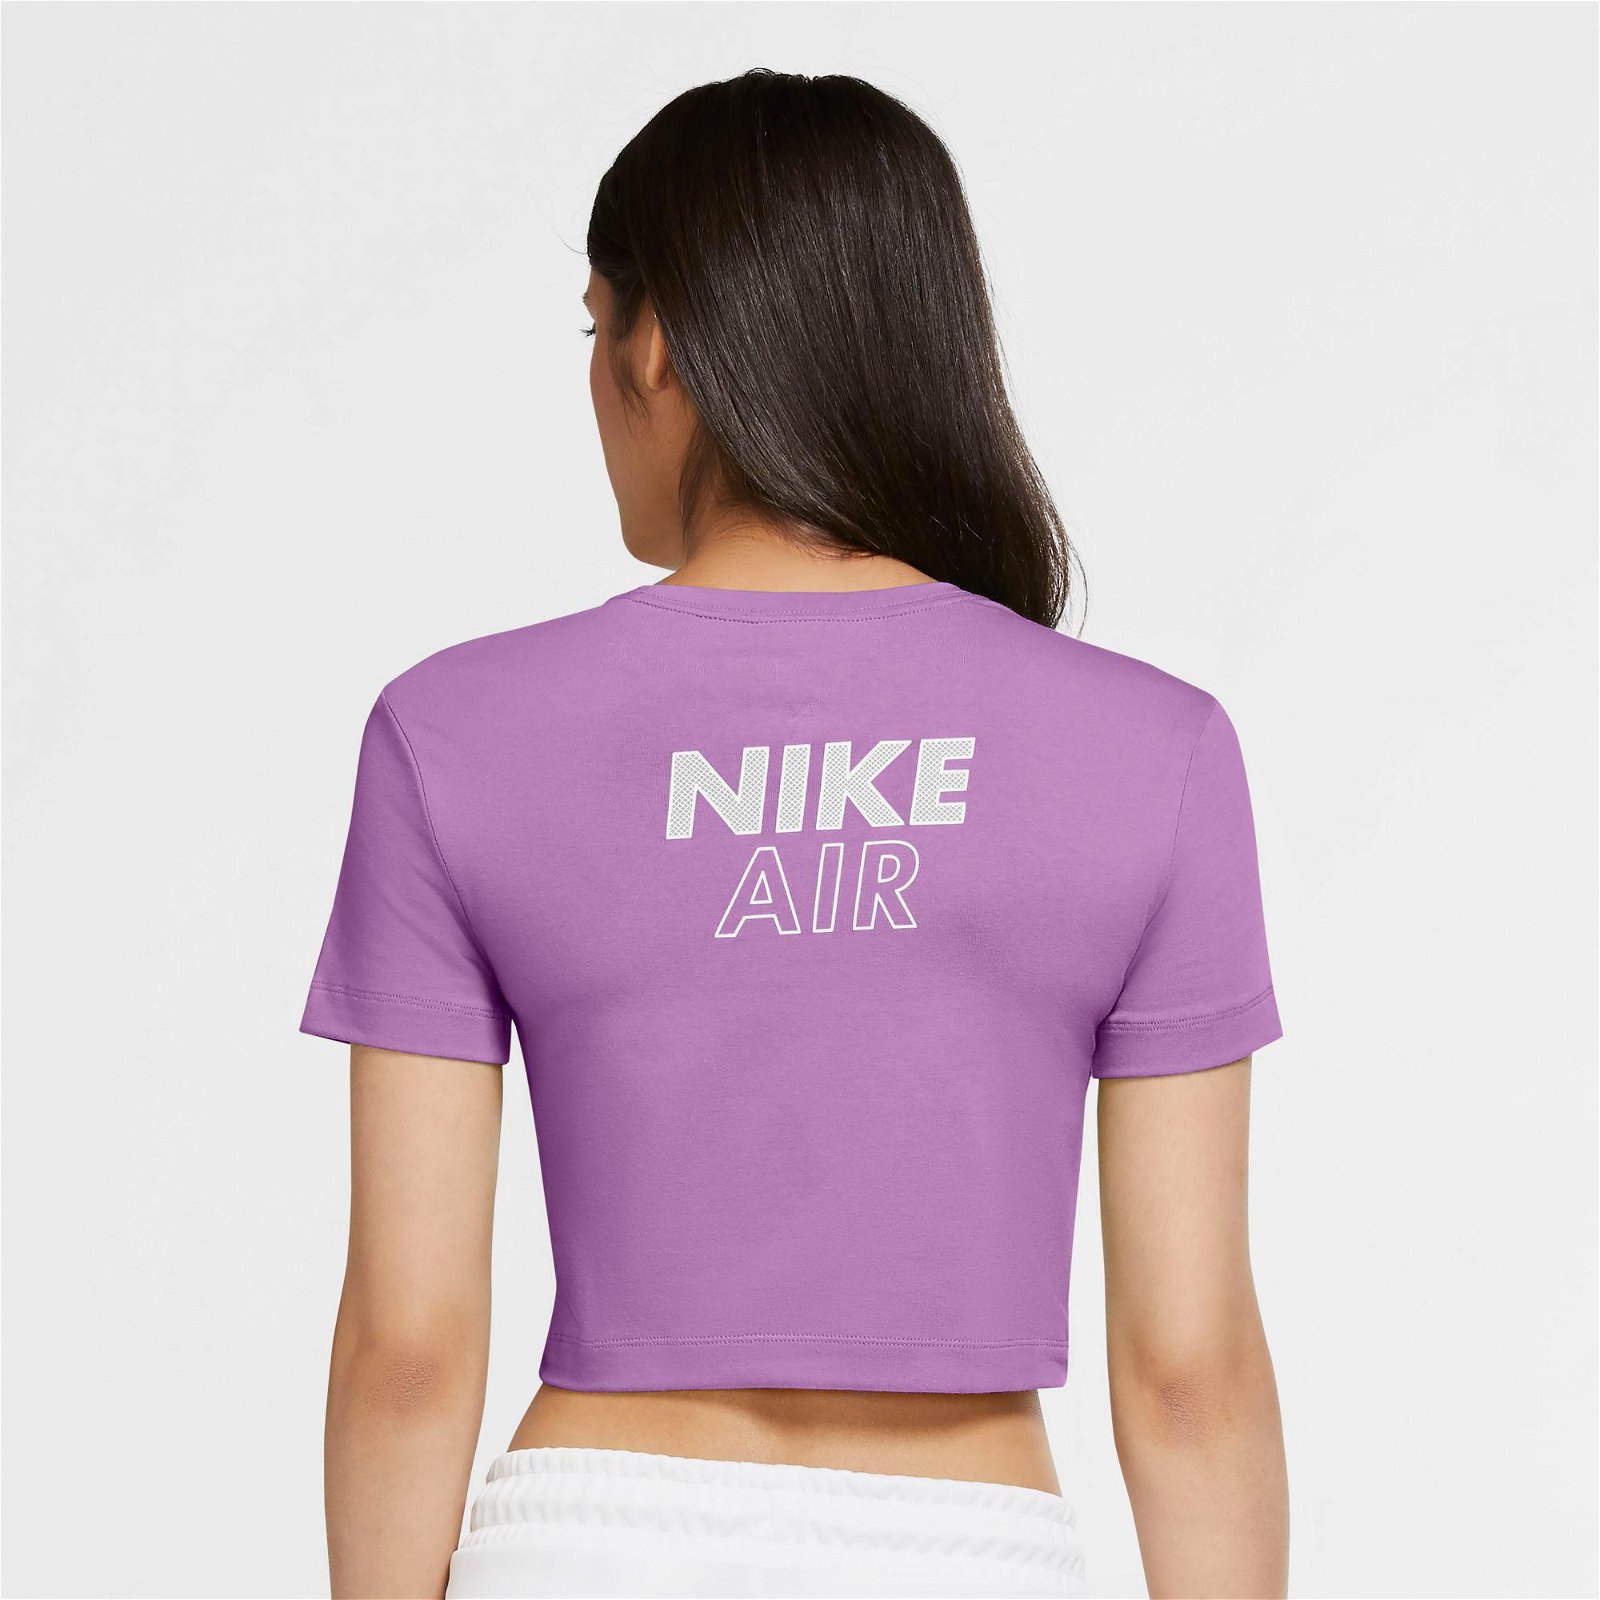 Nike Sportswear Air Top Crop Kadın Mor T-Shirt